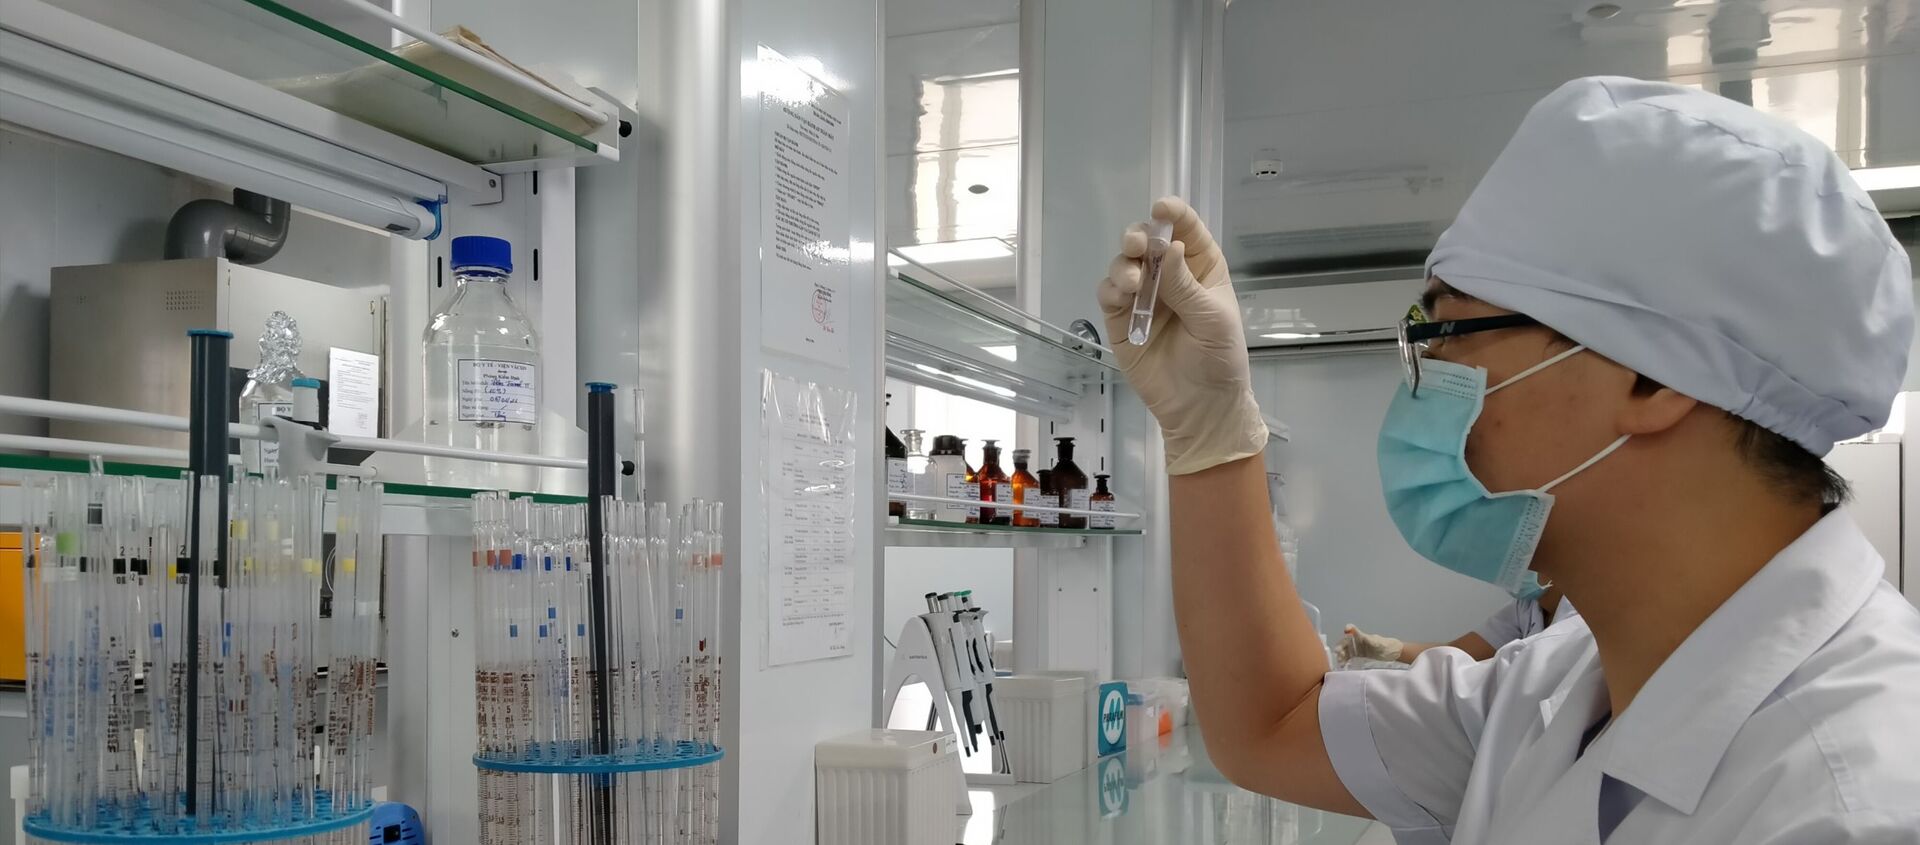 Nghiên cứu vaccine COVID-19 tại Viện Vaccine và Sinh phẩm Y tế tại tỉnh Khánh Hòa. - Sputnik Việt Nam, 1920, 15.01.2021